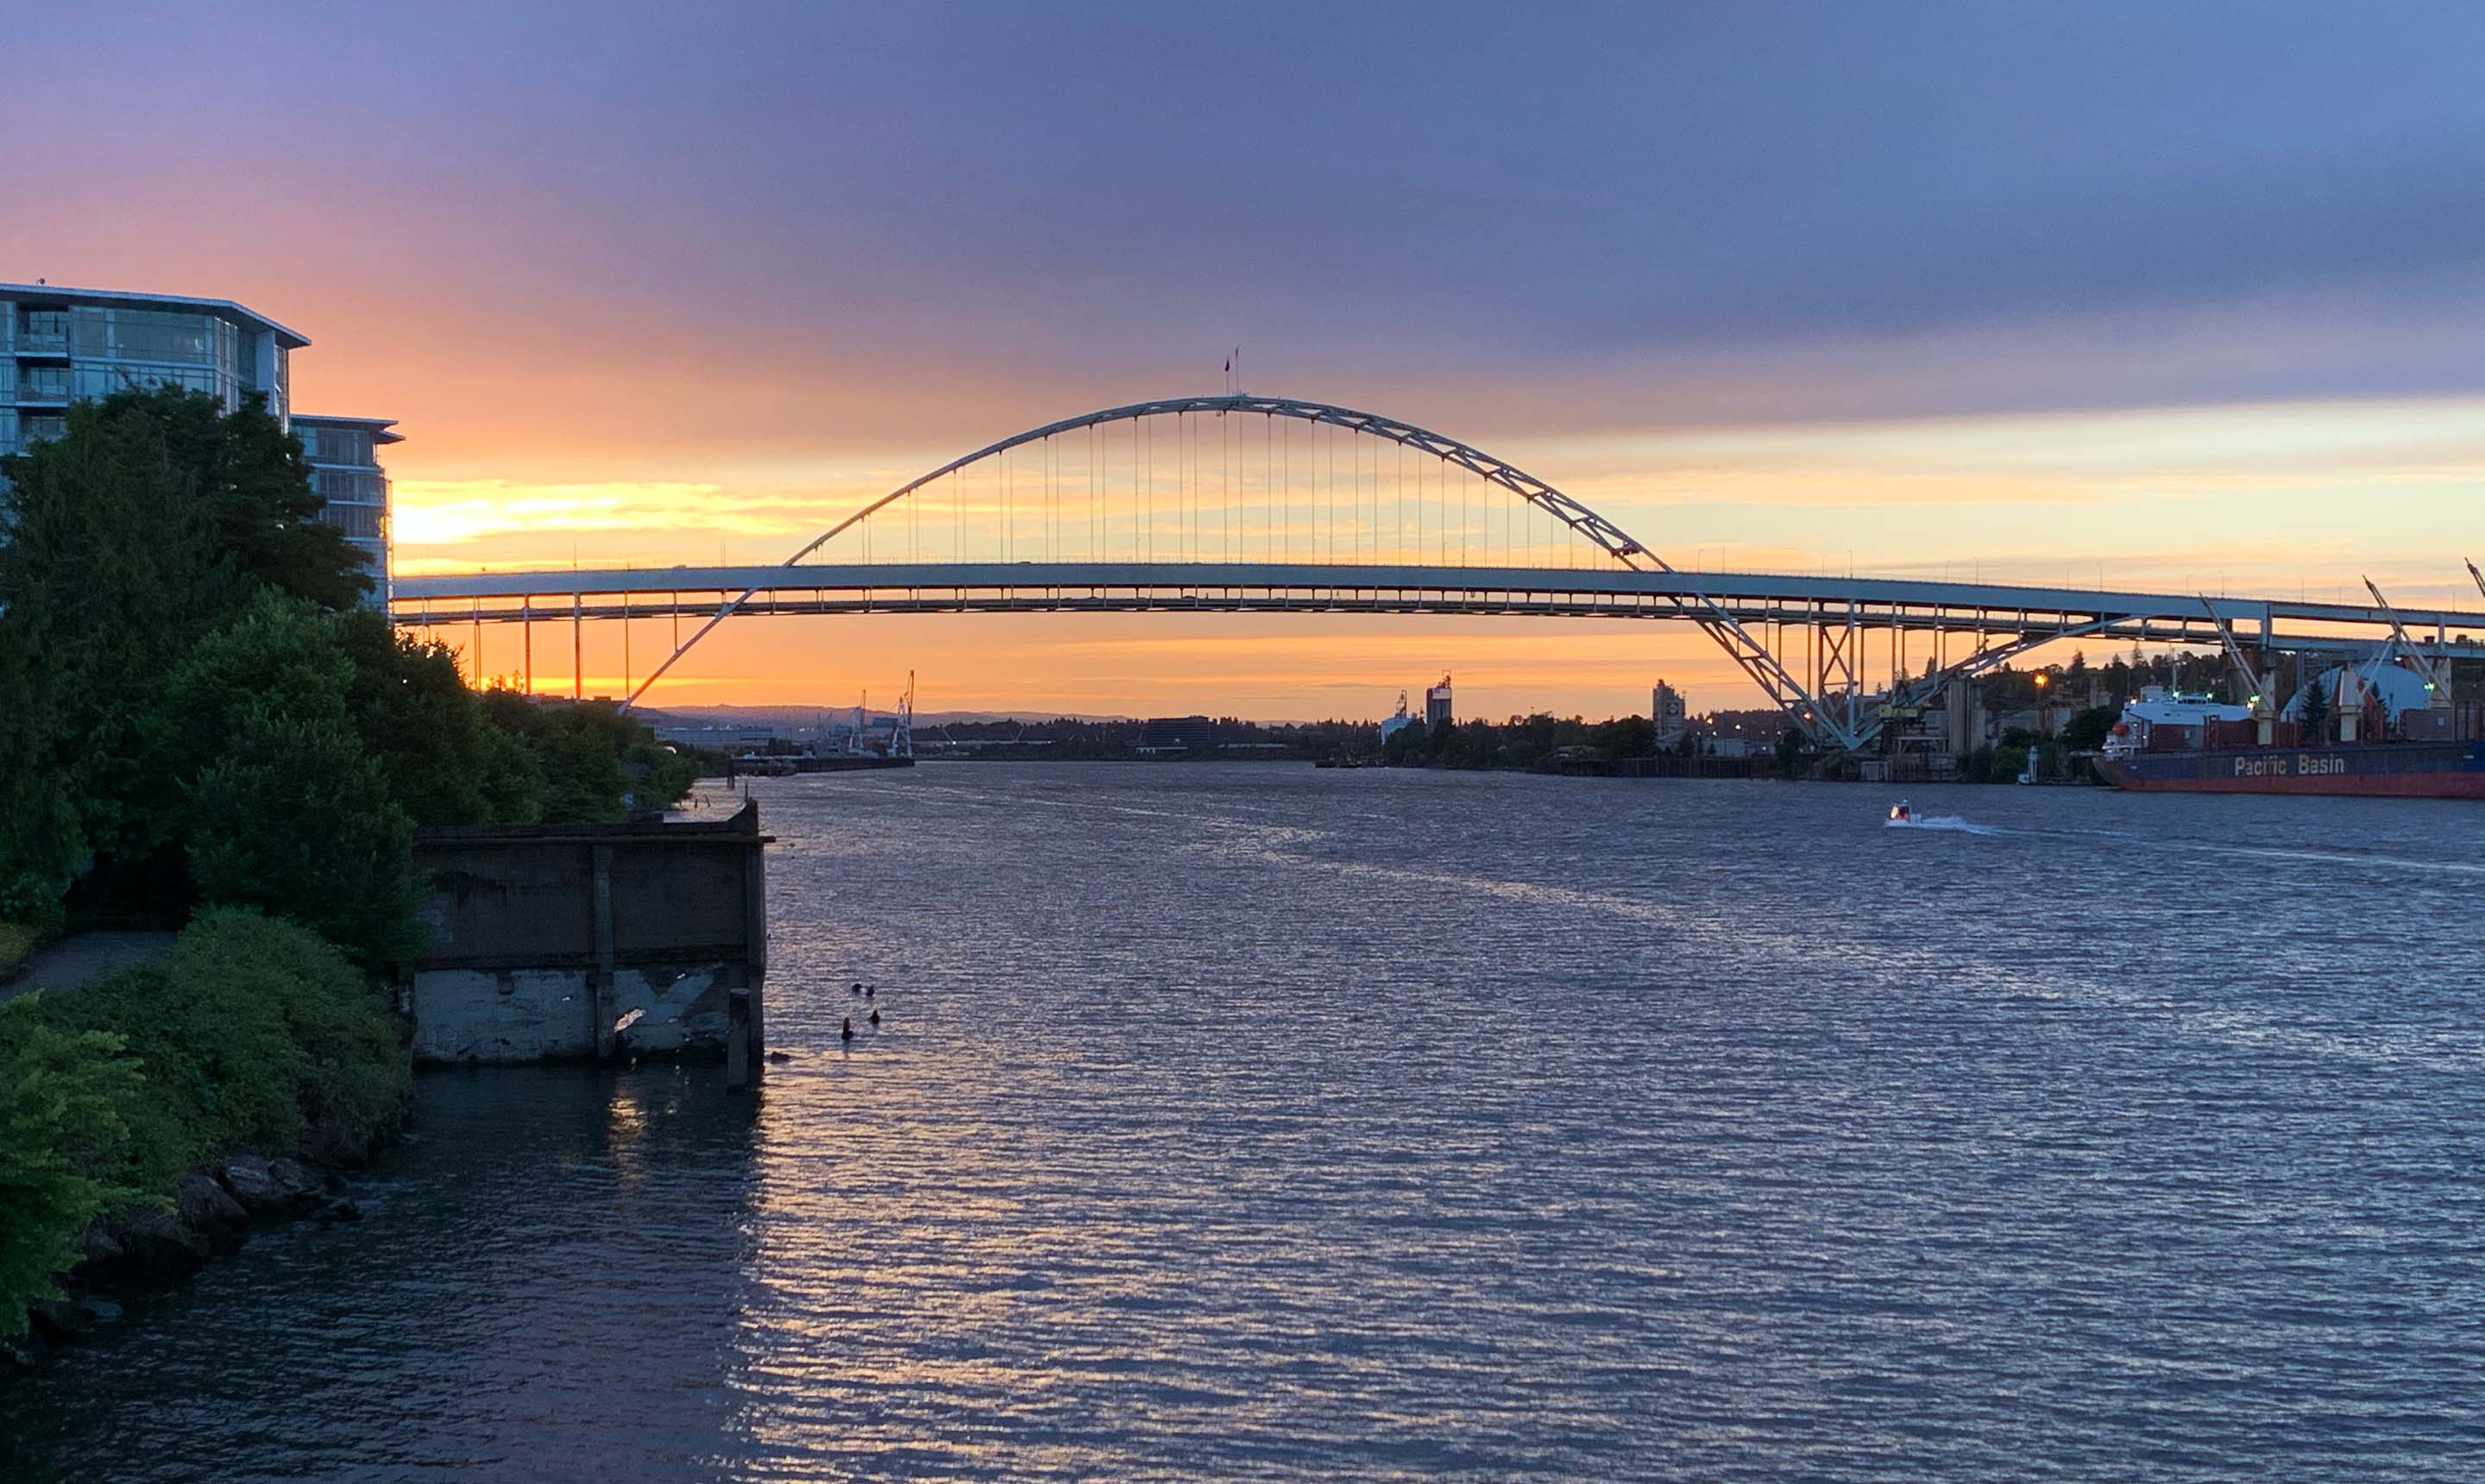 dramatic sunset photo of Portland's famed Fremont Bridge